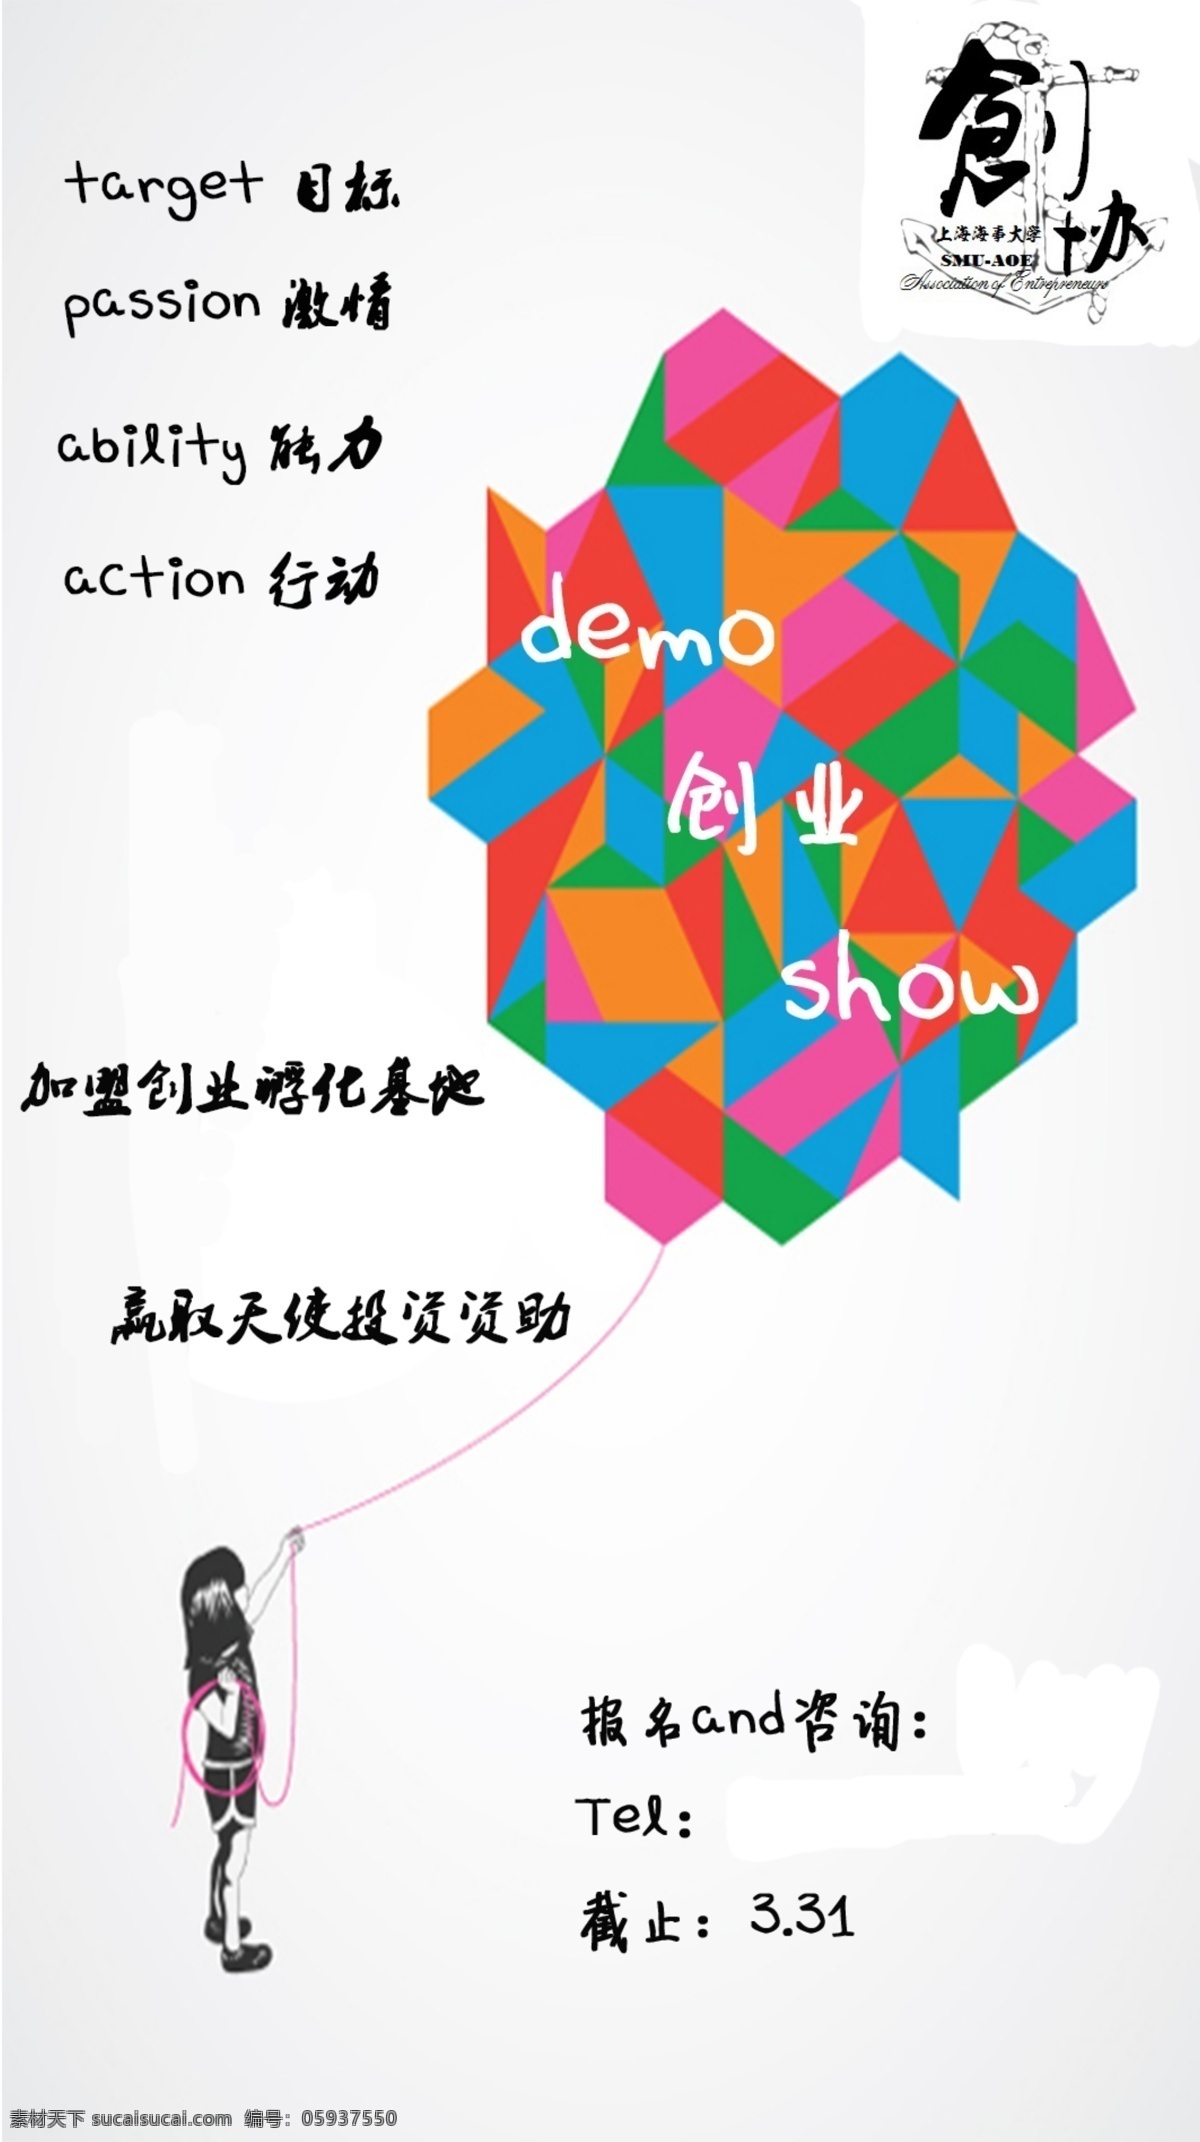 show 创业demo 上海海事大学 创业者协会 创业 创业比赛 创业活动 分层